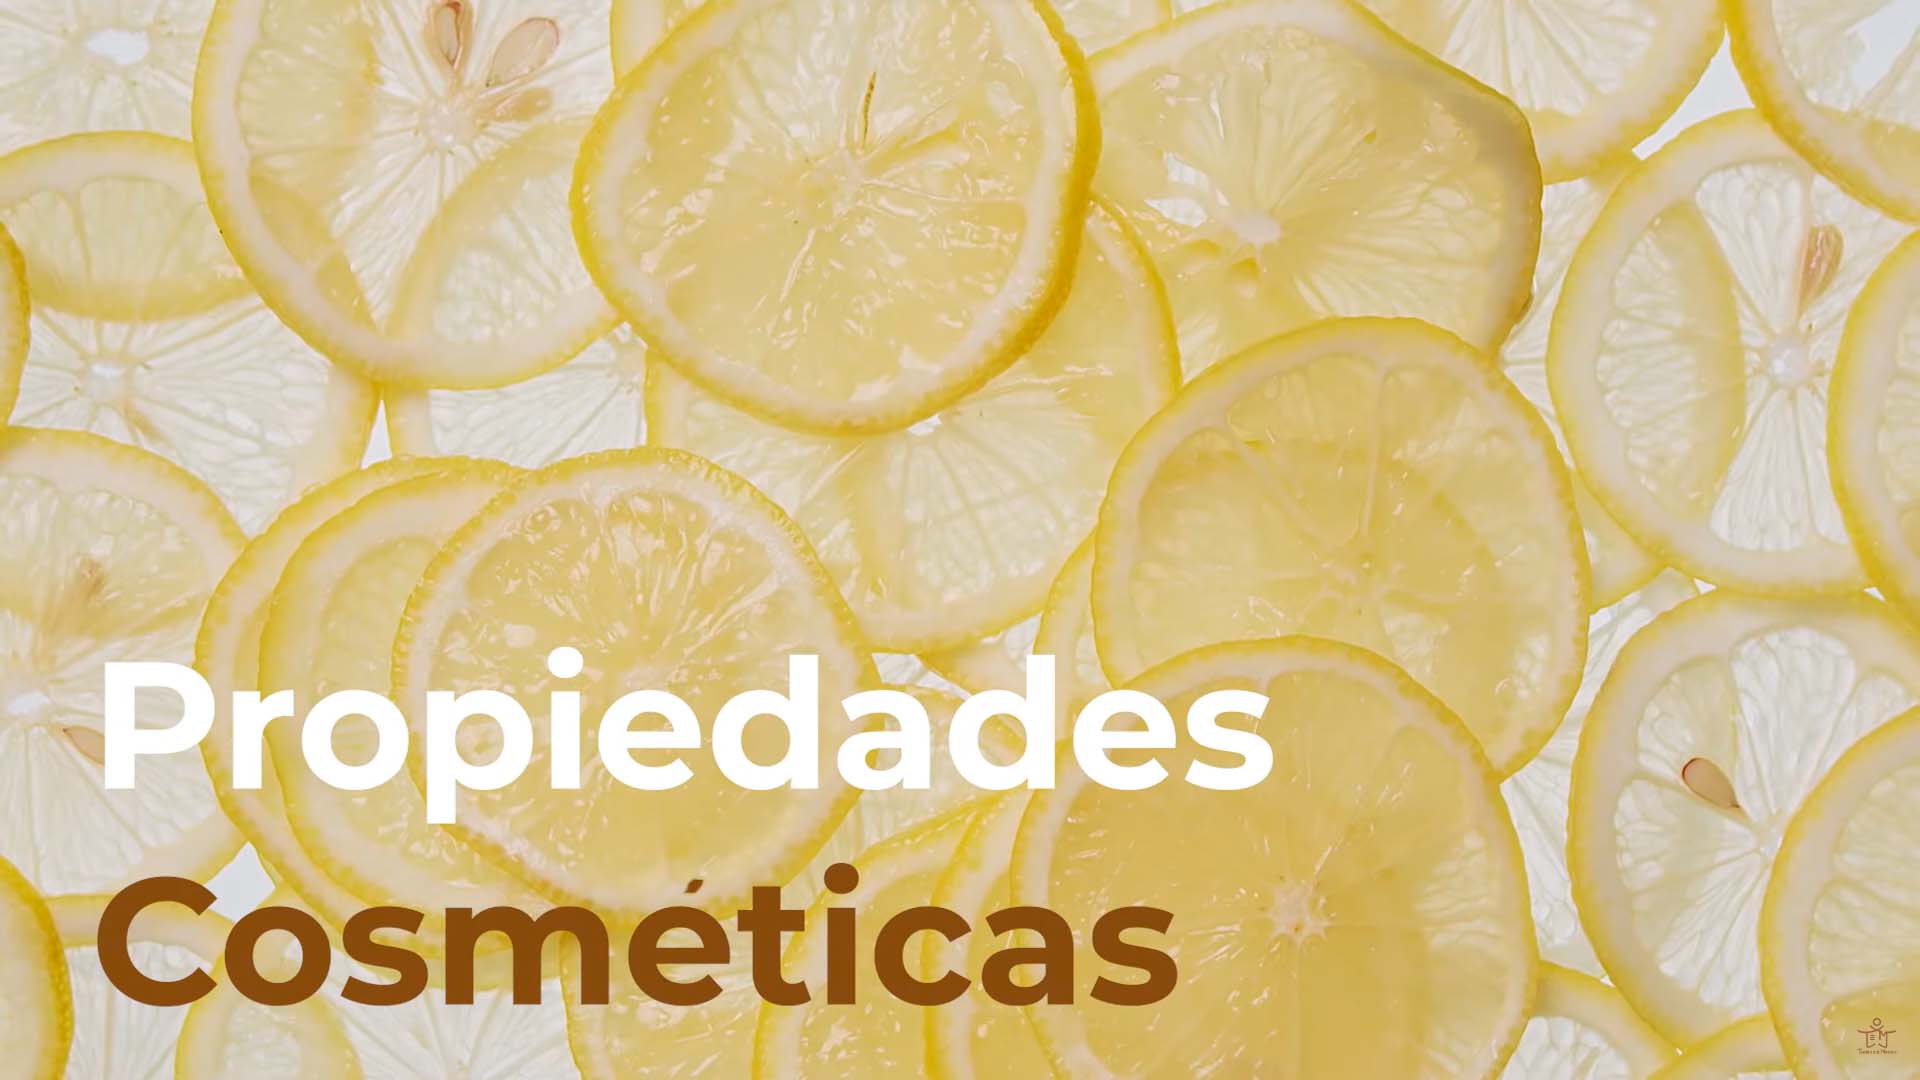 Propiedades cosméticas del aceite esencial de limón